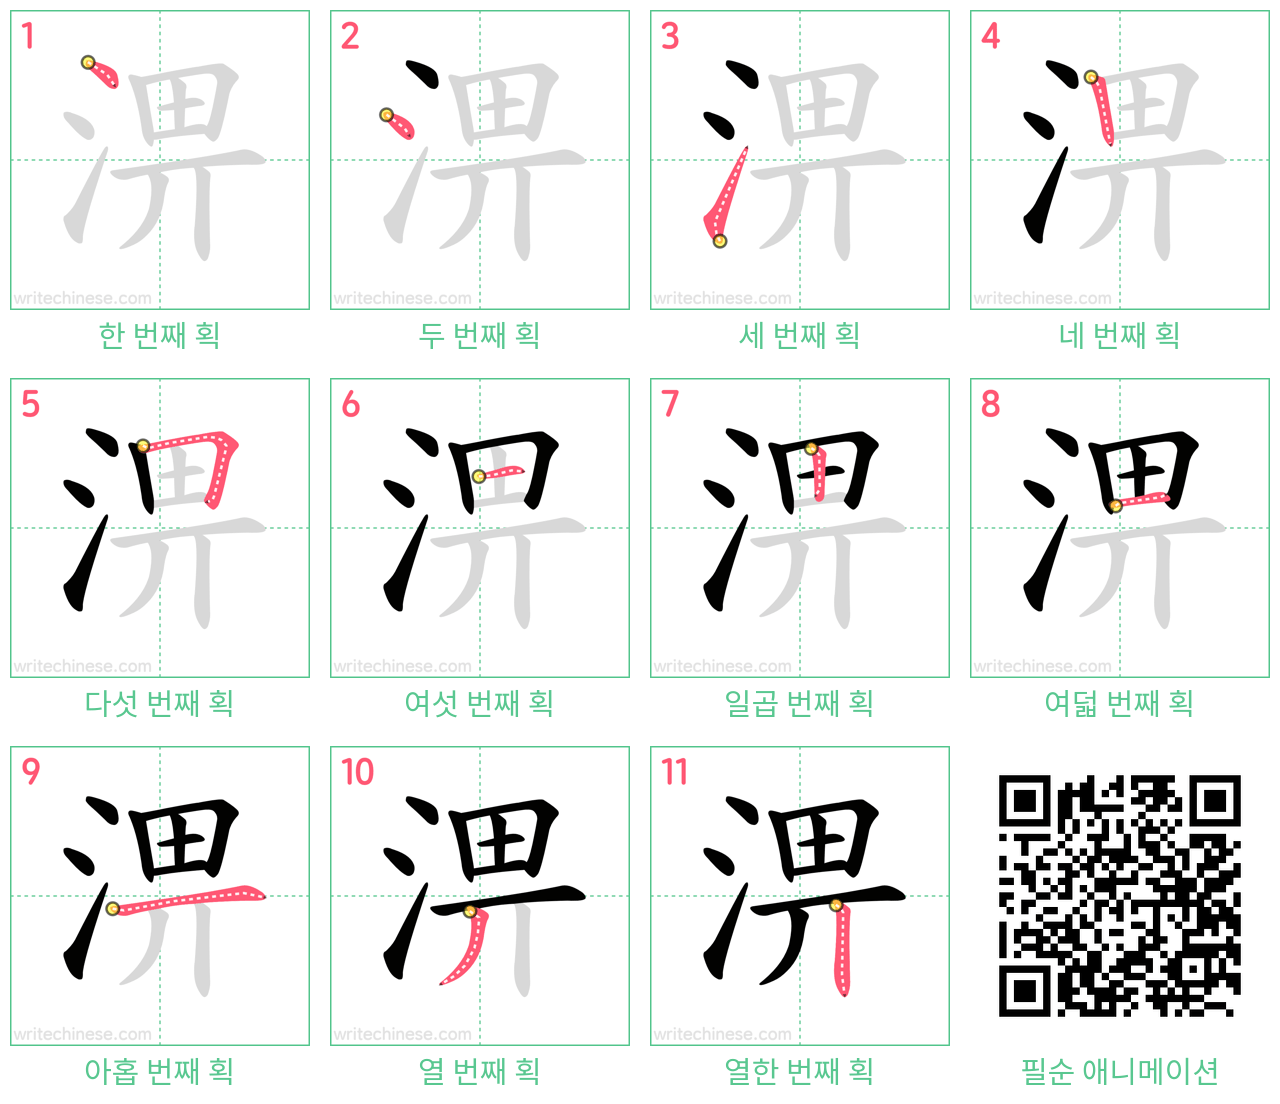 淠 step-by-step stroke order diagrams